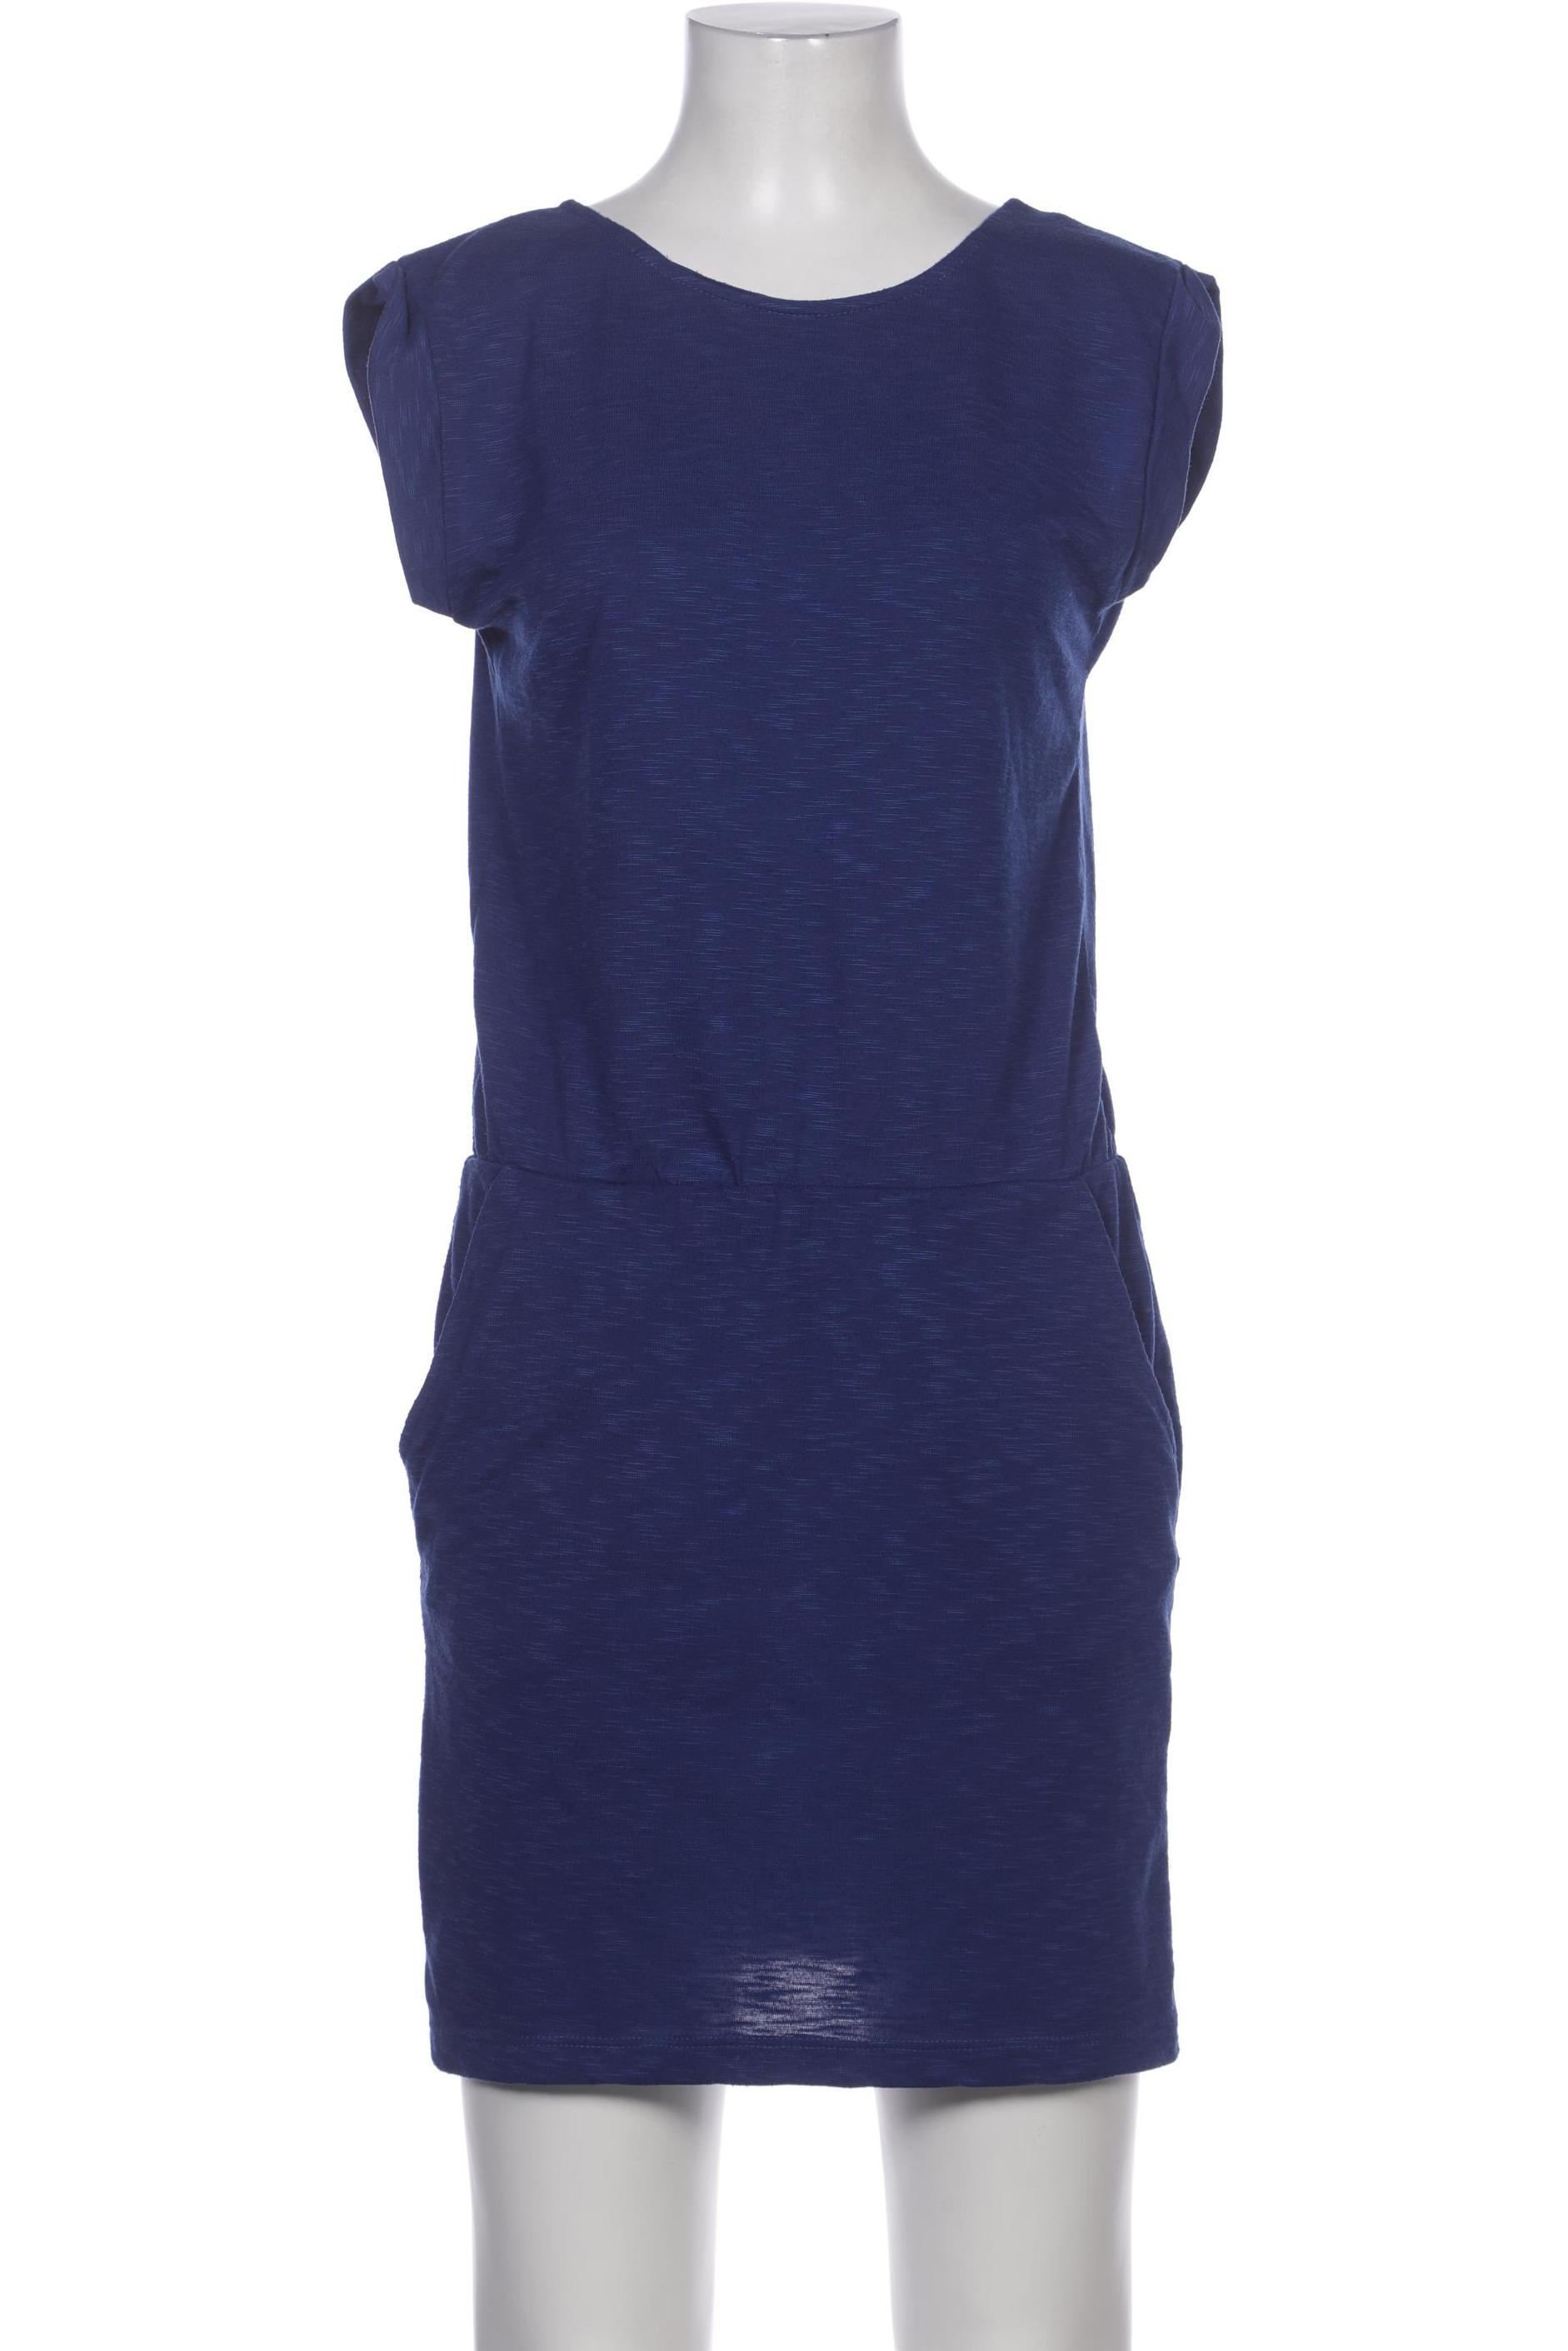 mbyM Damen Kleid, marineblau, Gr. 34 von MbyM